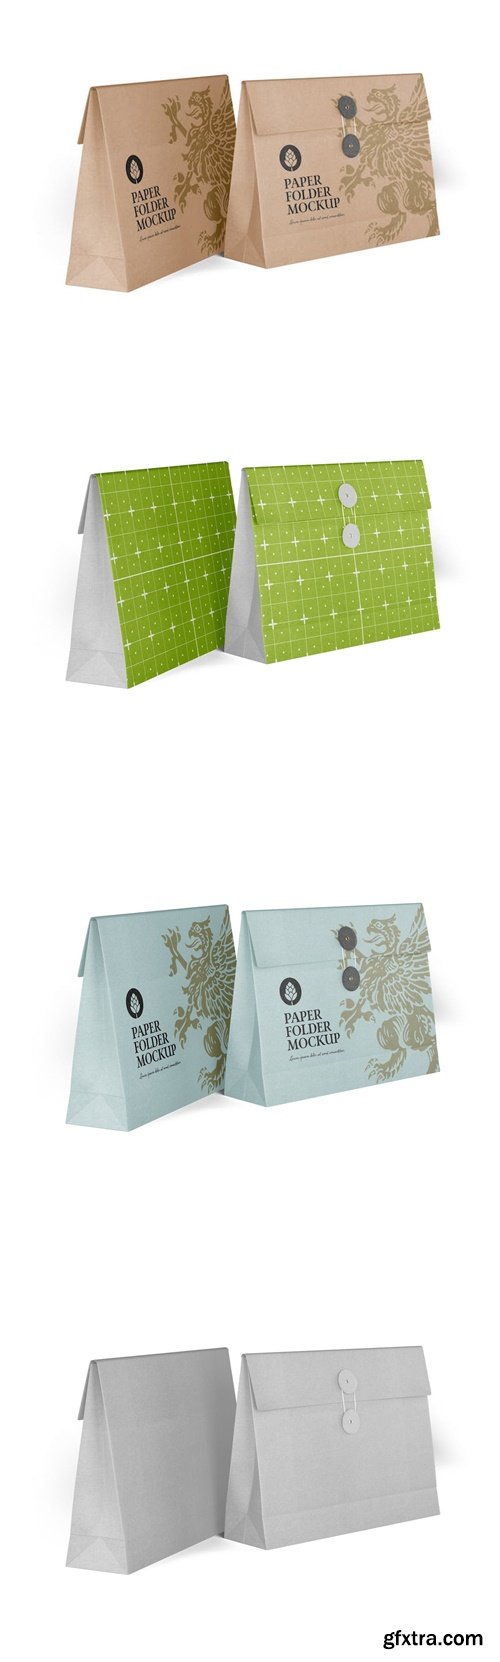 Paper Bag Folder with Bow mockup 7QX5QQQ